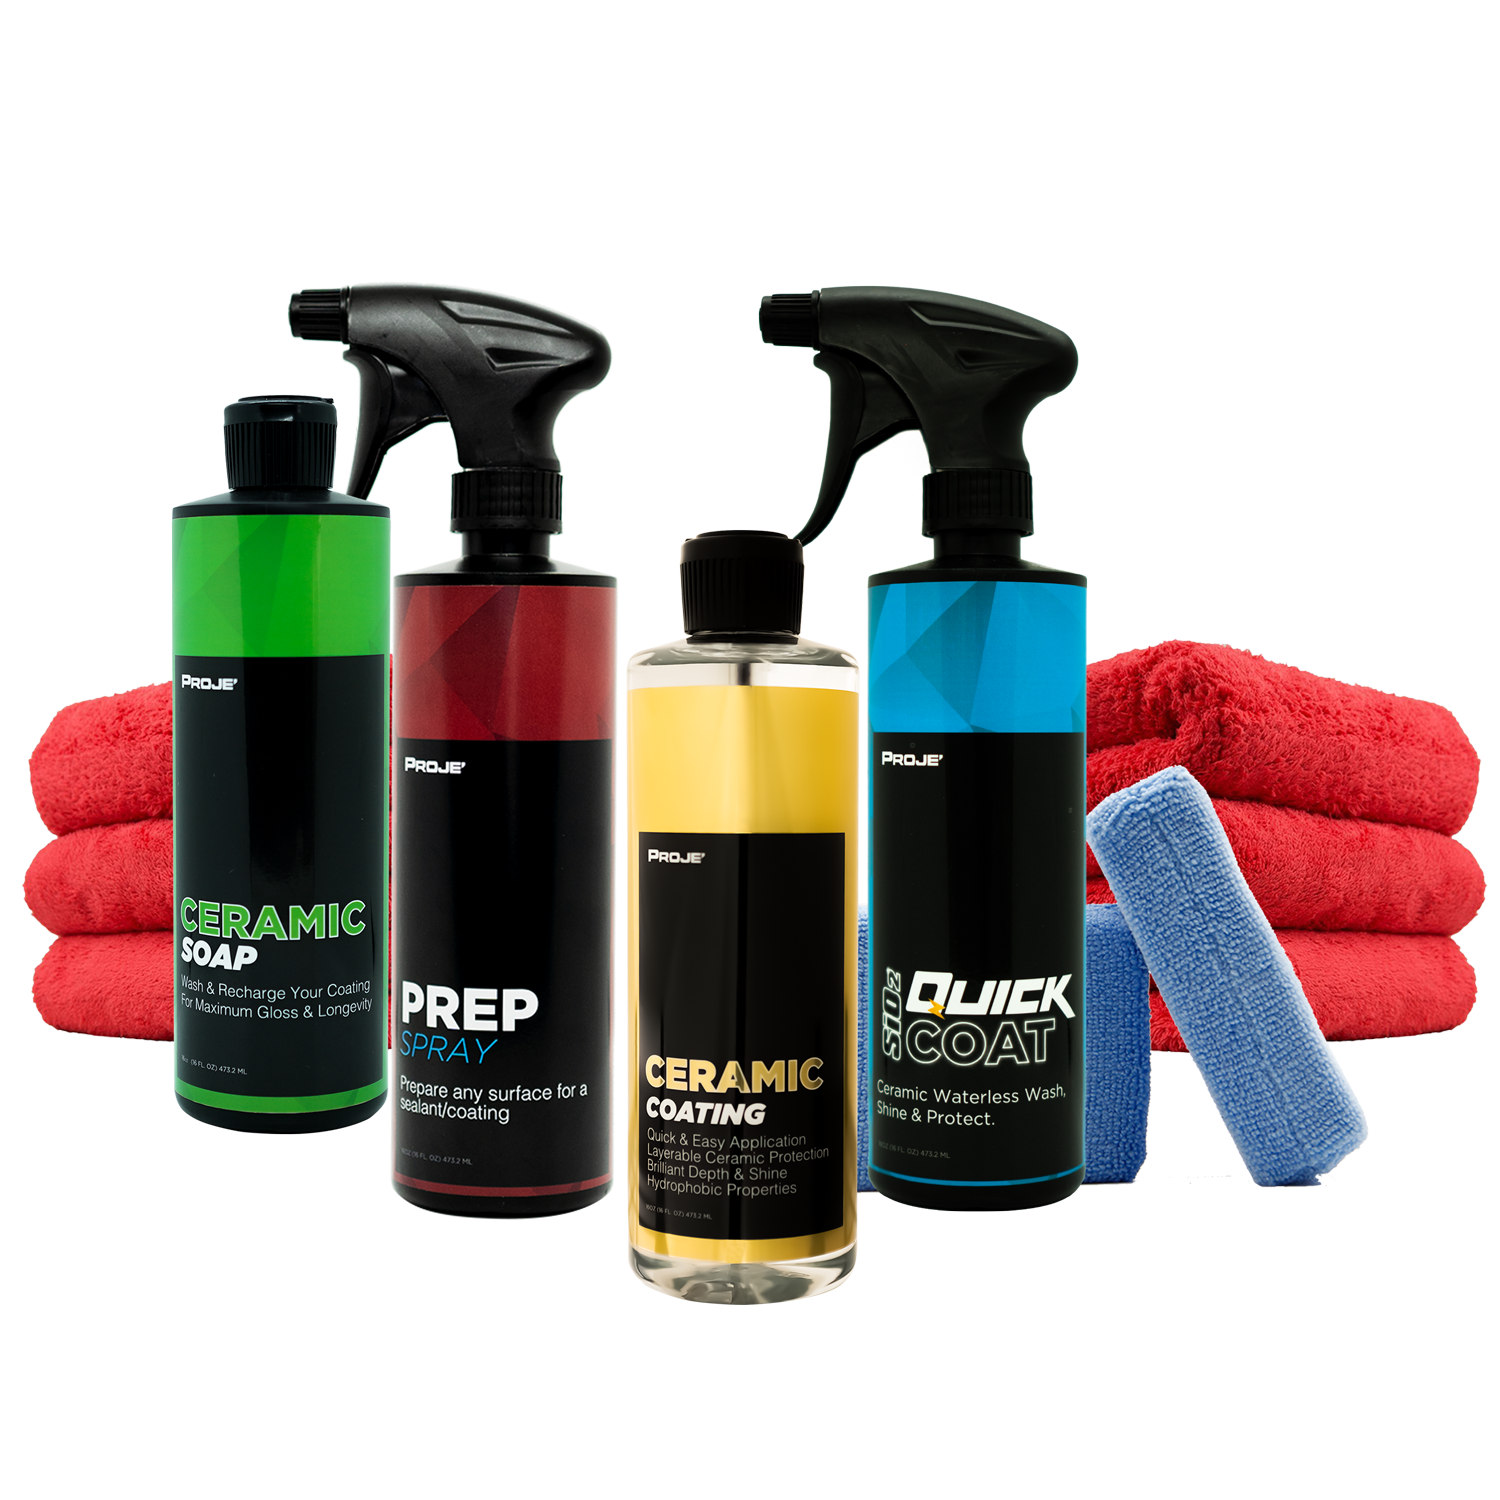 Ceramic Coating Surface Prep Soap vs Maintenance Car Shampoo